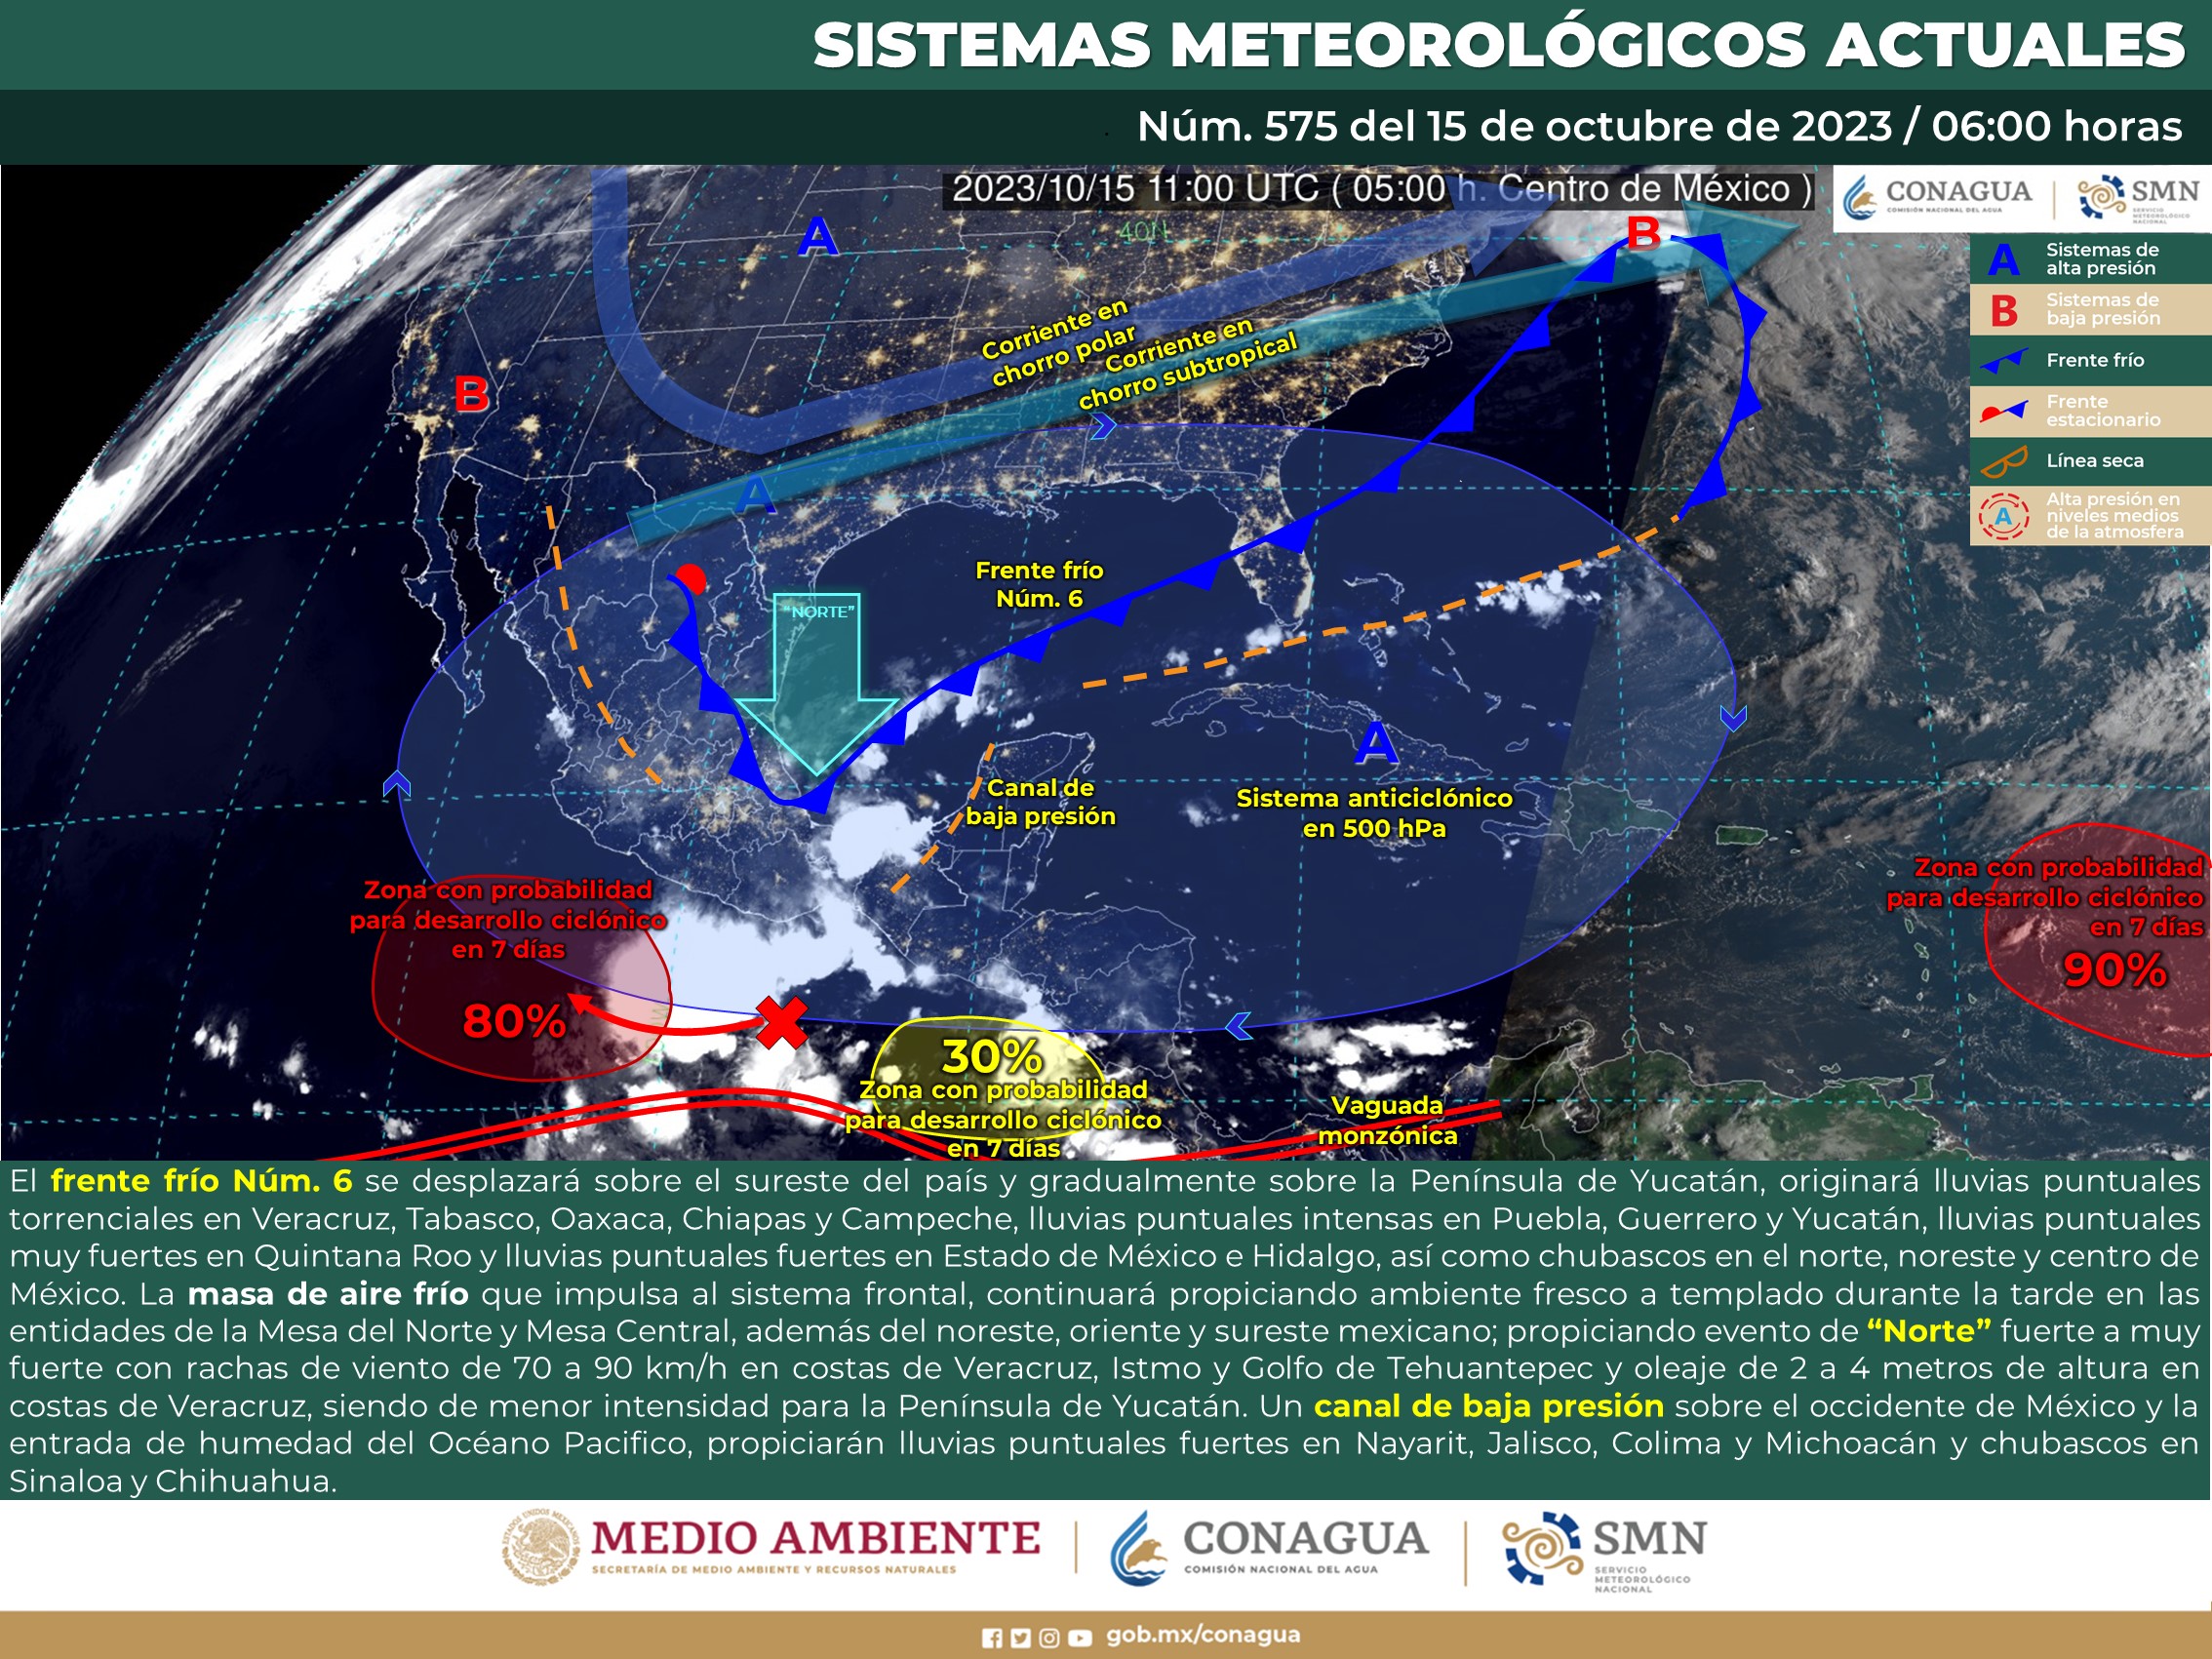 SMN prevé lluvias puntuales torrenciales en Veracruz, Tabasco, Oaxaca, Chiapas y Campeche